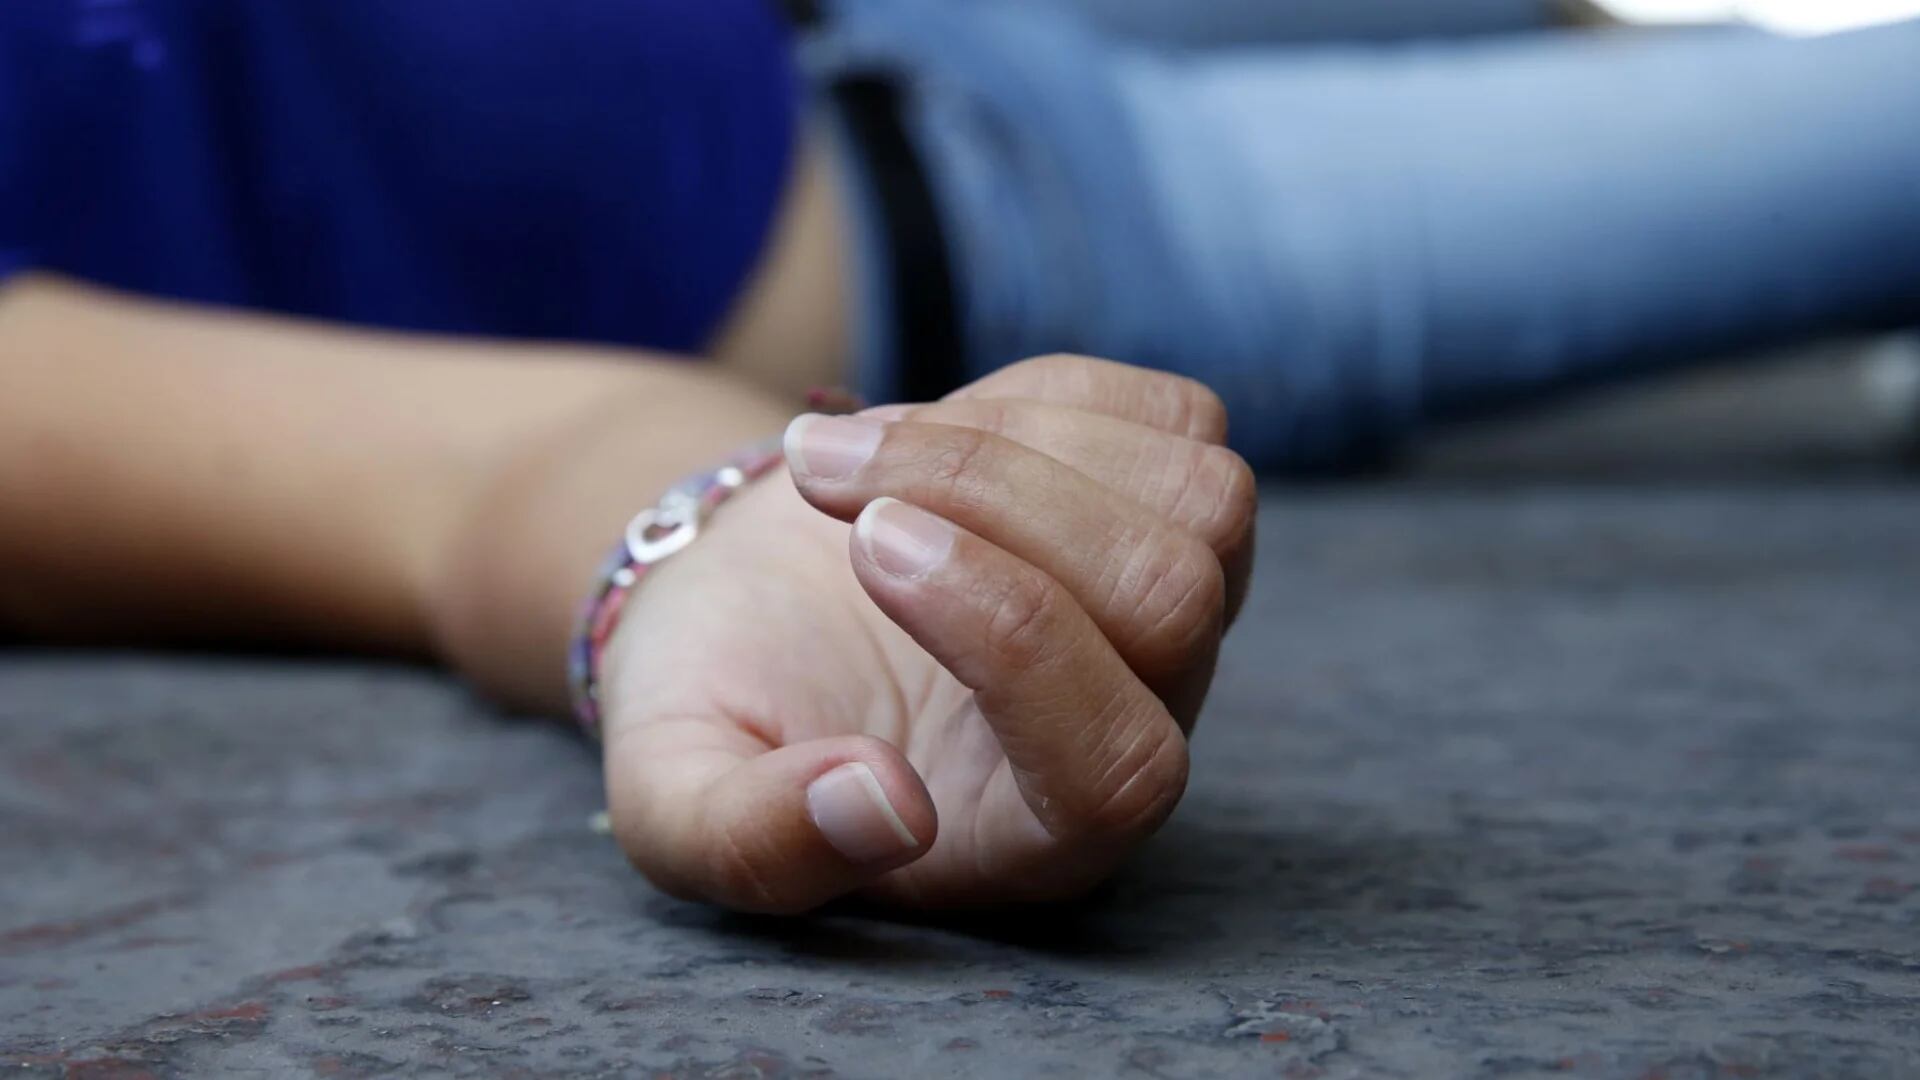 Fiscalía de Sonora investigará como feminicidio la muerte de Ana Eliza, encontrada en su casa en Hermosillo